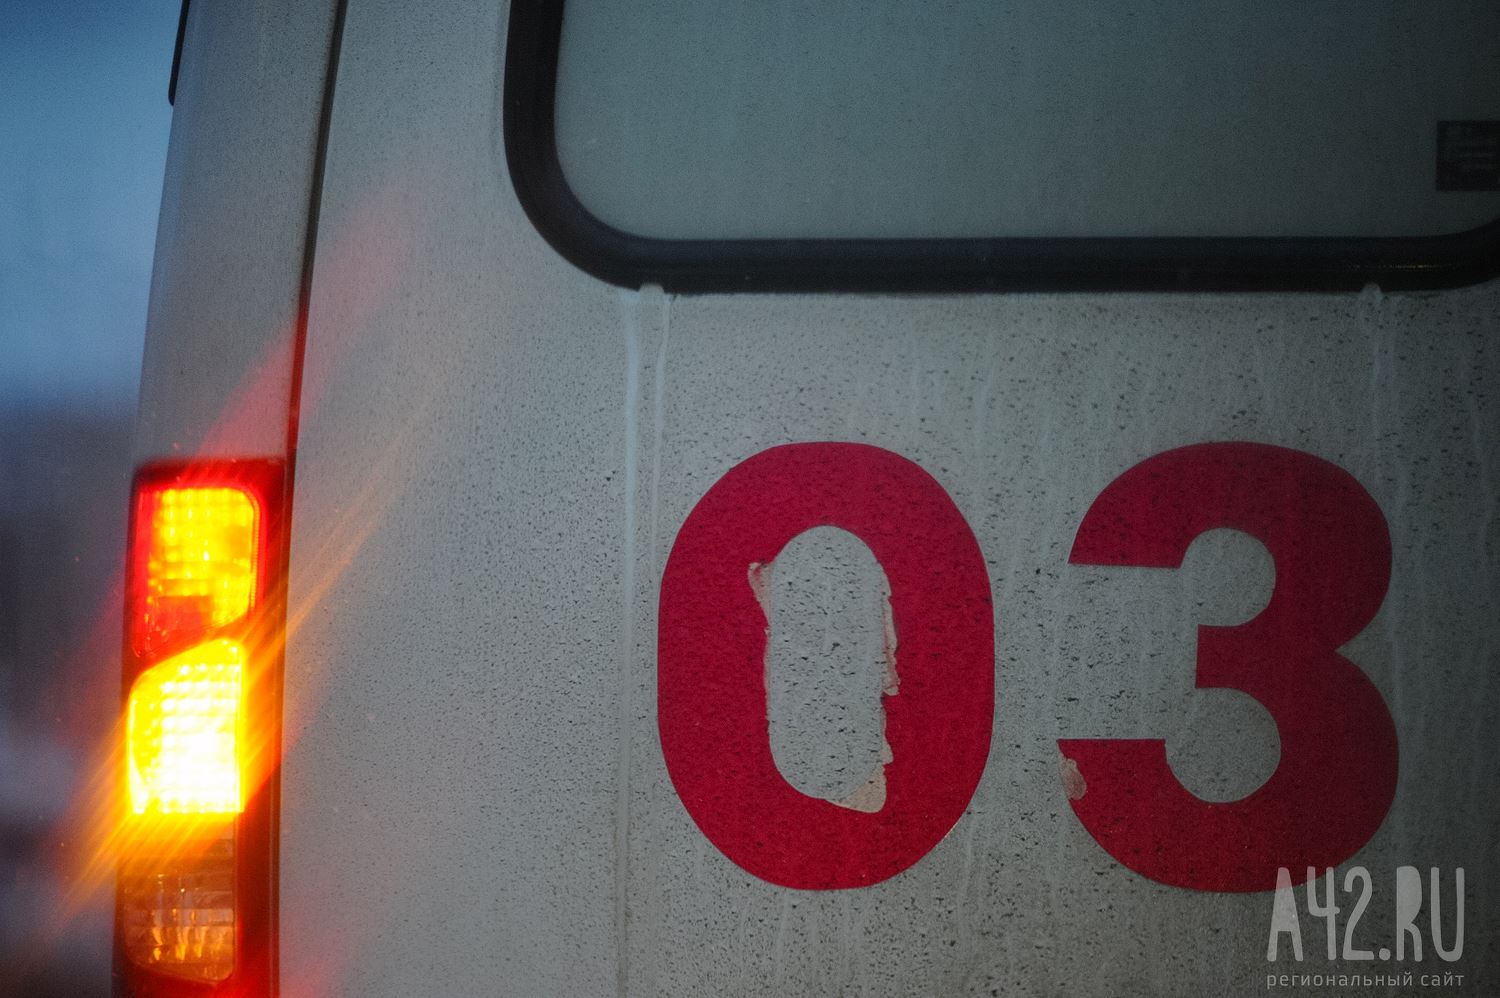 «Человека выбросило из машины»: очевидцы сообщили о смертельном ДТП в Кузбассе